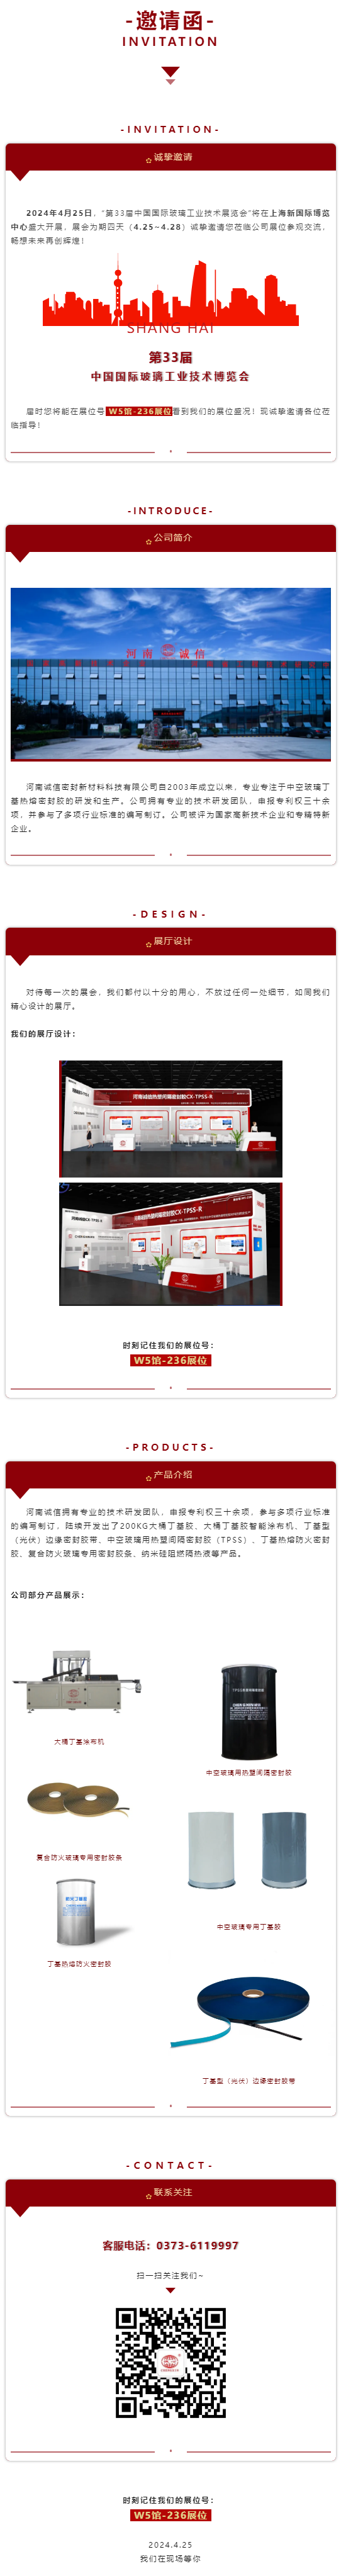 让我们相约—第33届中国国际玻璃工业技术展览会.png